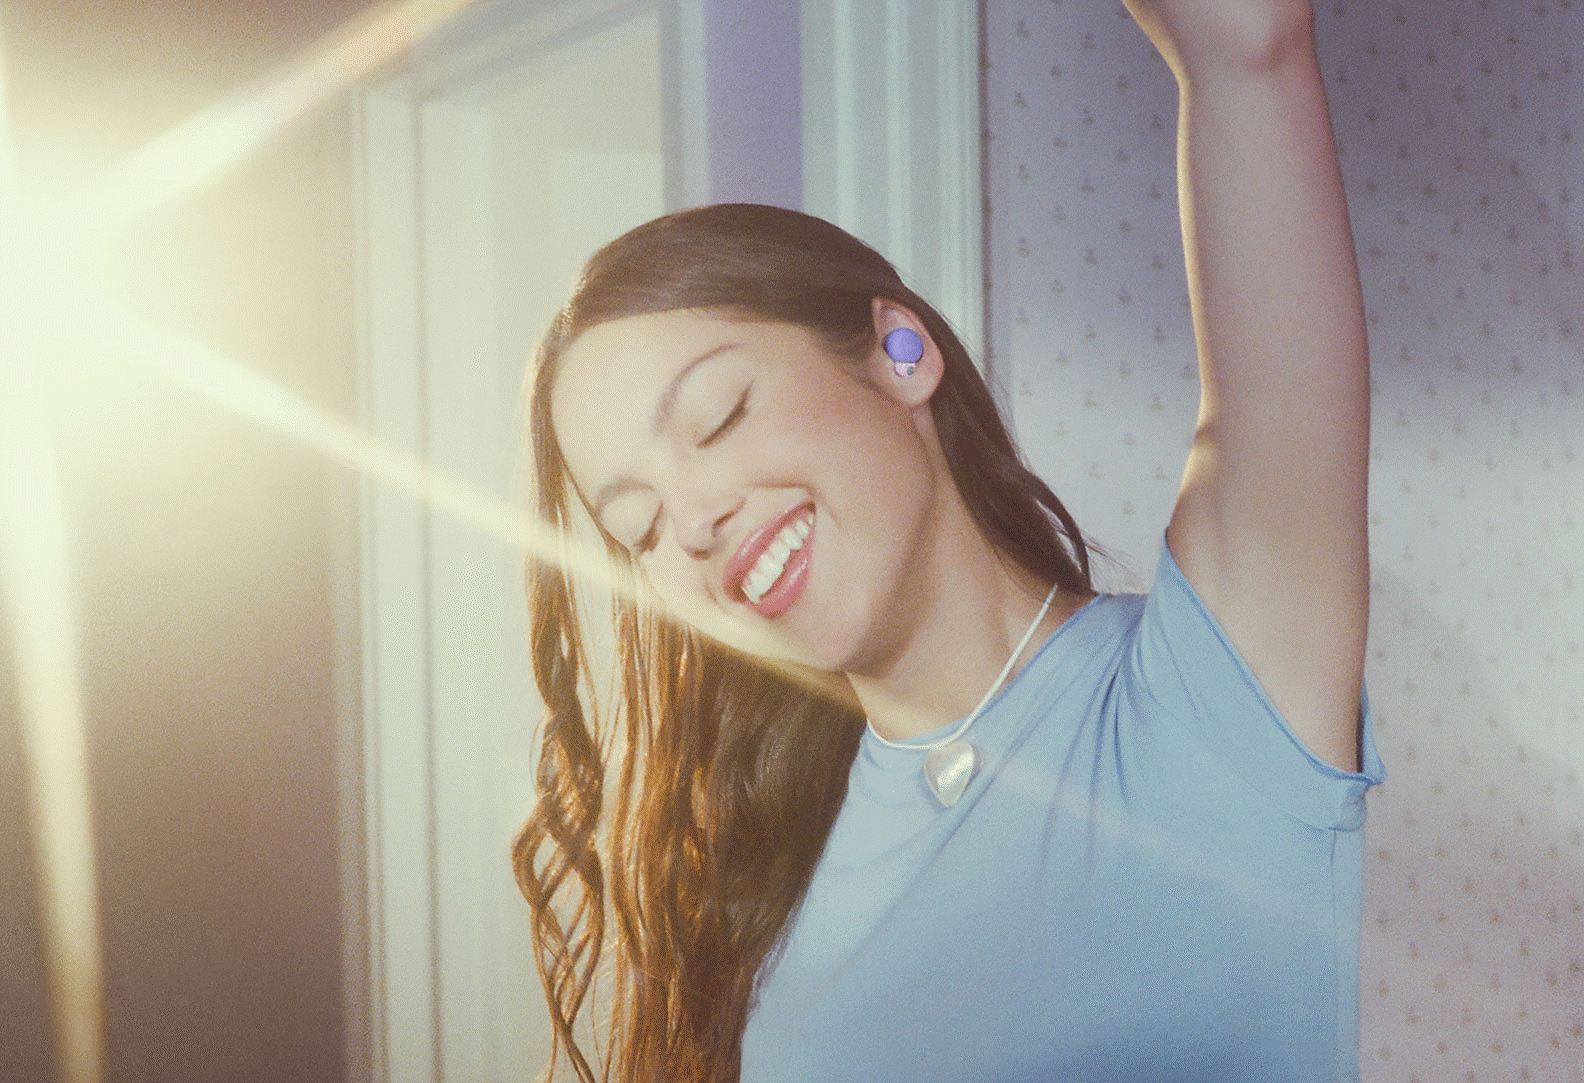 Immagine di Olivia che indossa degli auricolari LinkBuds S viola e alza un braccio sopra la testa con una luce luminosa sullo sfondo